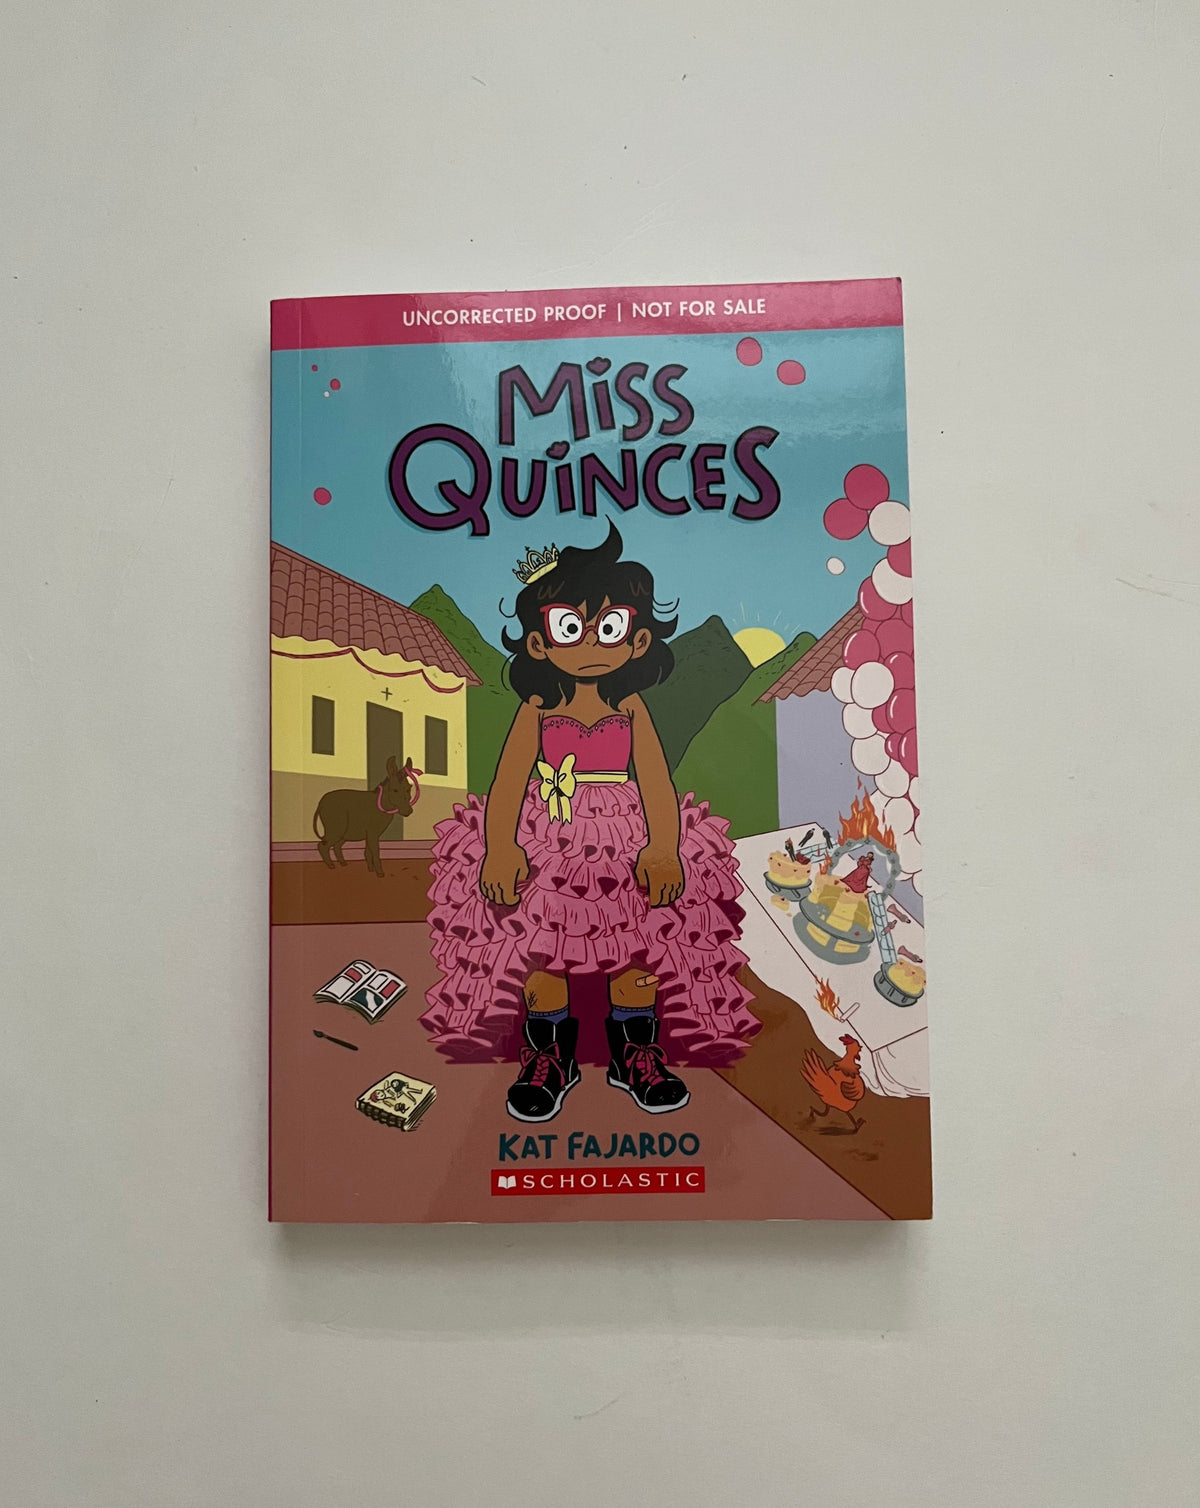 Miss Quinces by Kat Fajardo